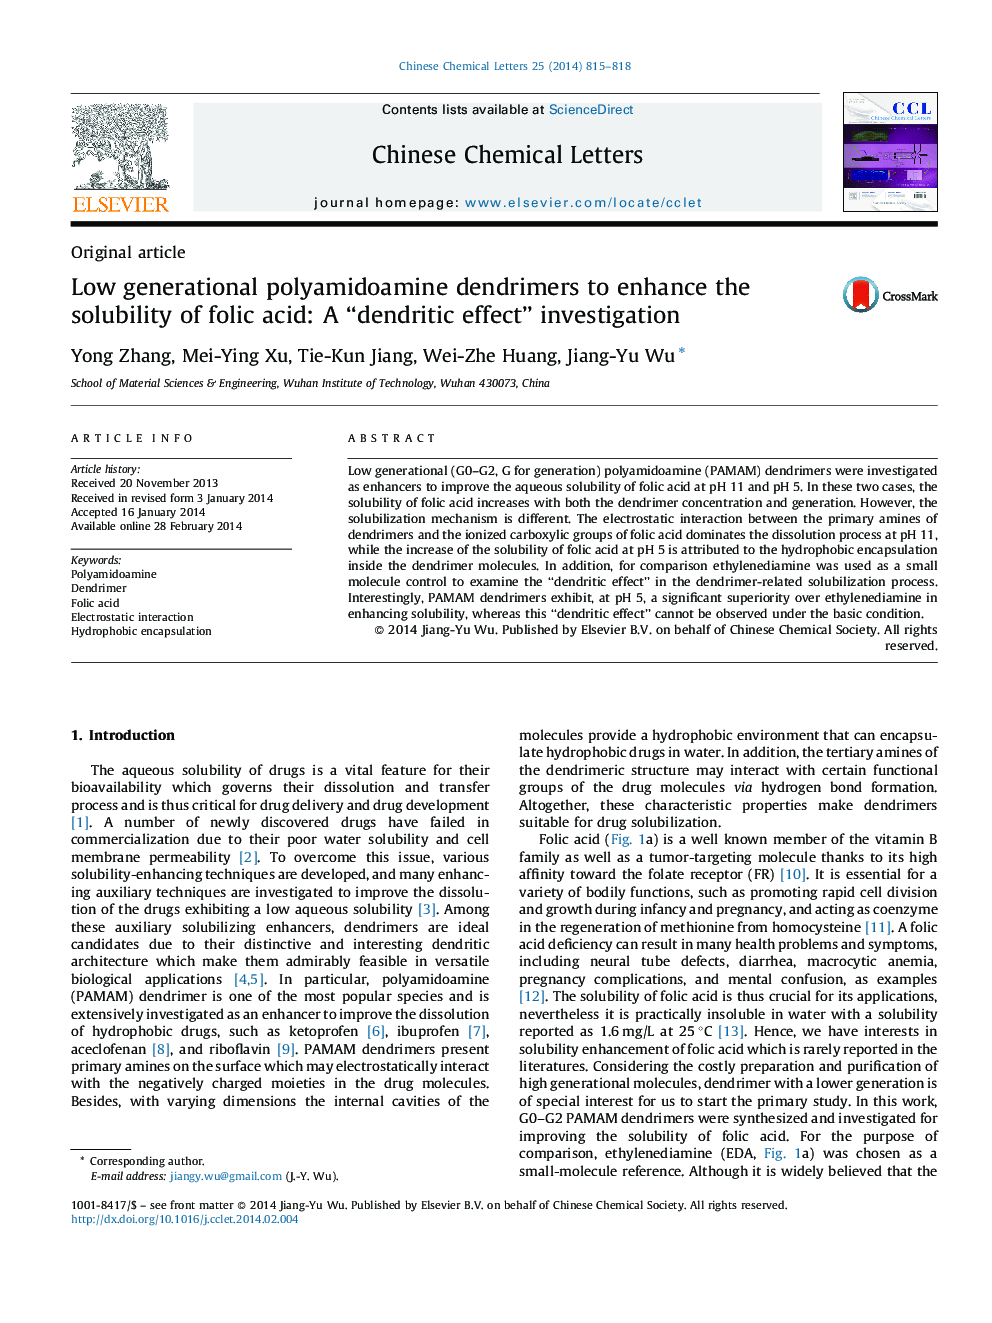 پلی آمیدآمین دندریمر نسل پایینی برای افزایش حلالیت اسید فولیک: اثرات دندریتیک تحقیق و بررسی 